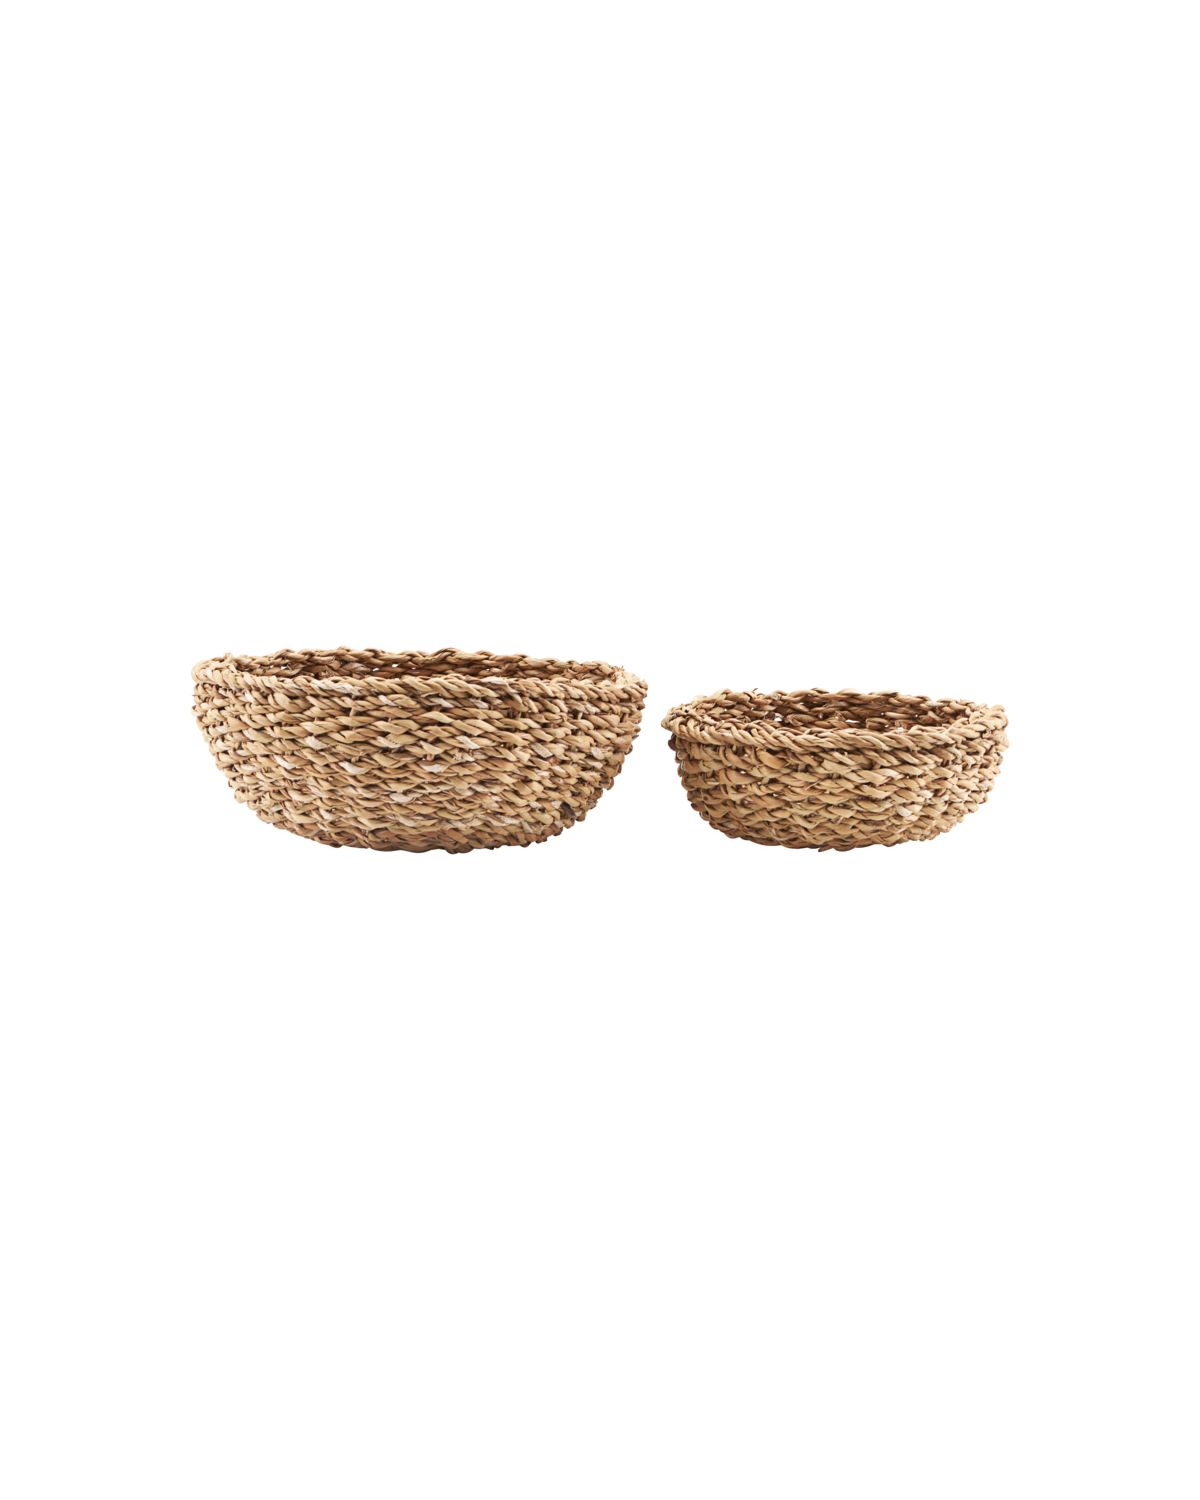 Bread Baskets- Set of 2